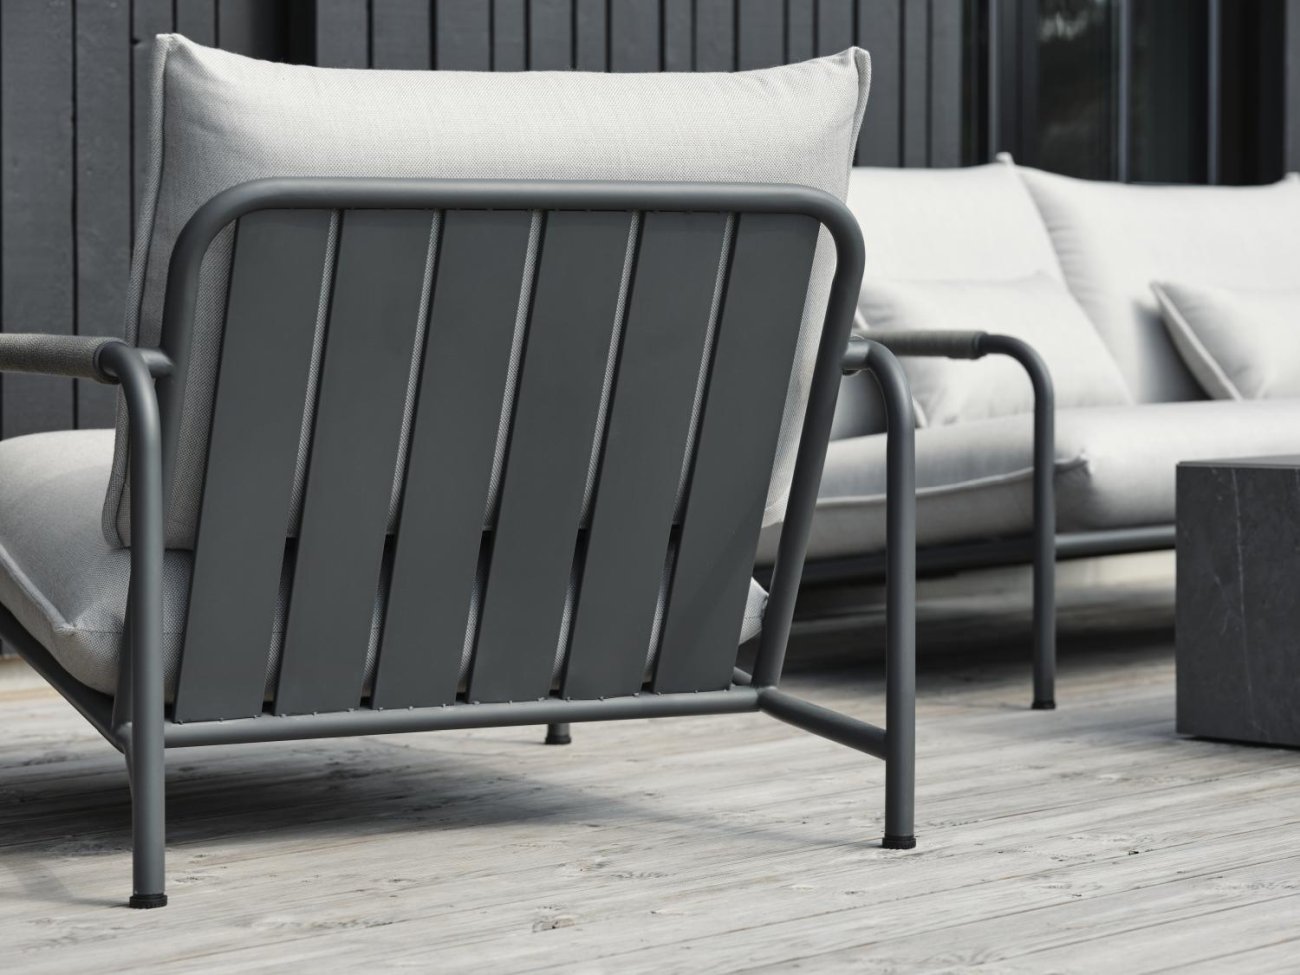 Der Gartensessel Lerberget überzeugt mit seinem modernen Design. Gefertigt wurde er aus Stoff, welcher einen grauen Farbton besitzt. Das Gestell ist aus Metall und hat eine Anthrazit Farbe. Die Sitzhöhe des Sessels beträgt 42 cm.